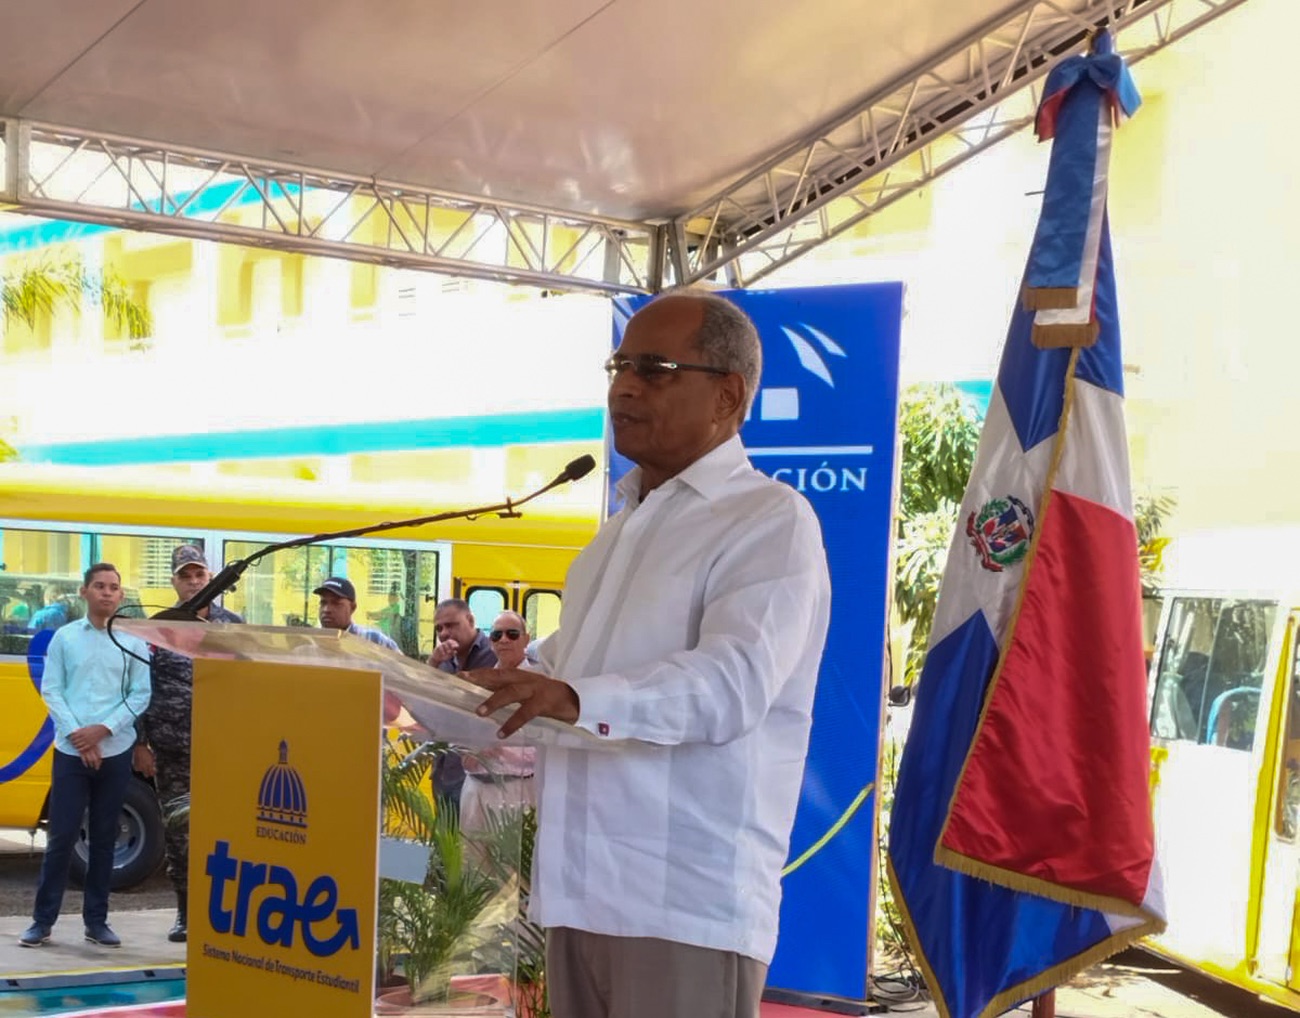 REPÚBLICA DOMINICANA: Director de Trae presentará avances del Sistema de Transporte Estudiantil en evento internacional